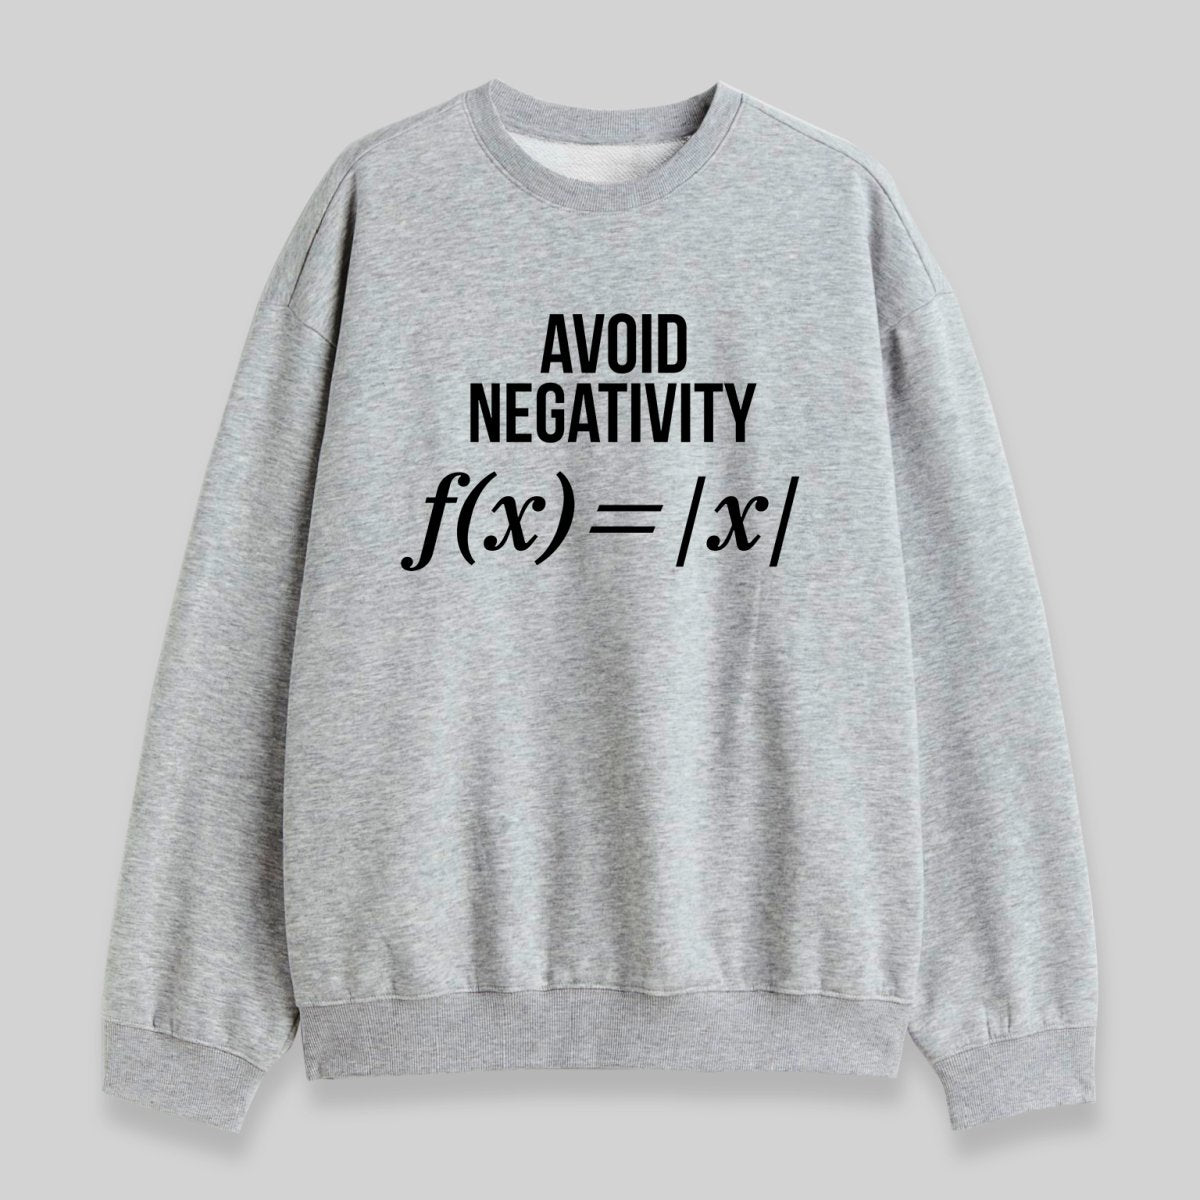 Avoid Negativity Sweatshirt - Geeksoutfit